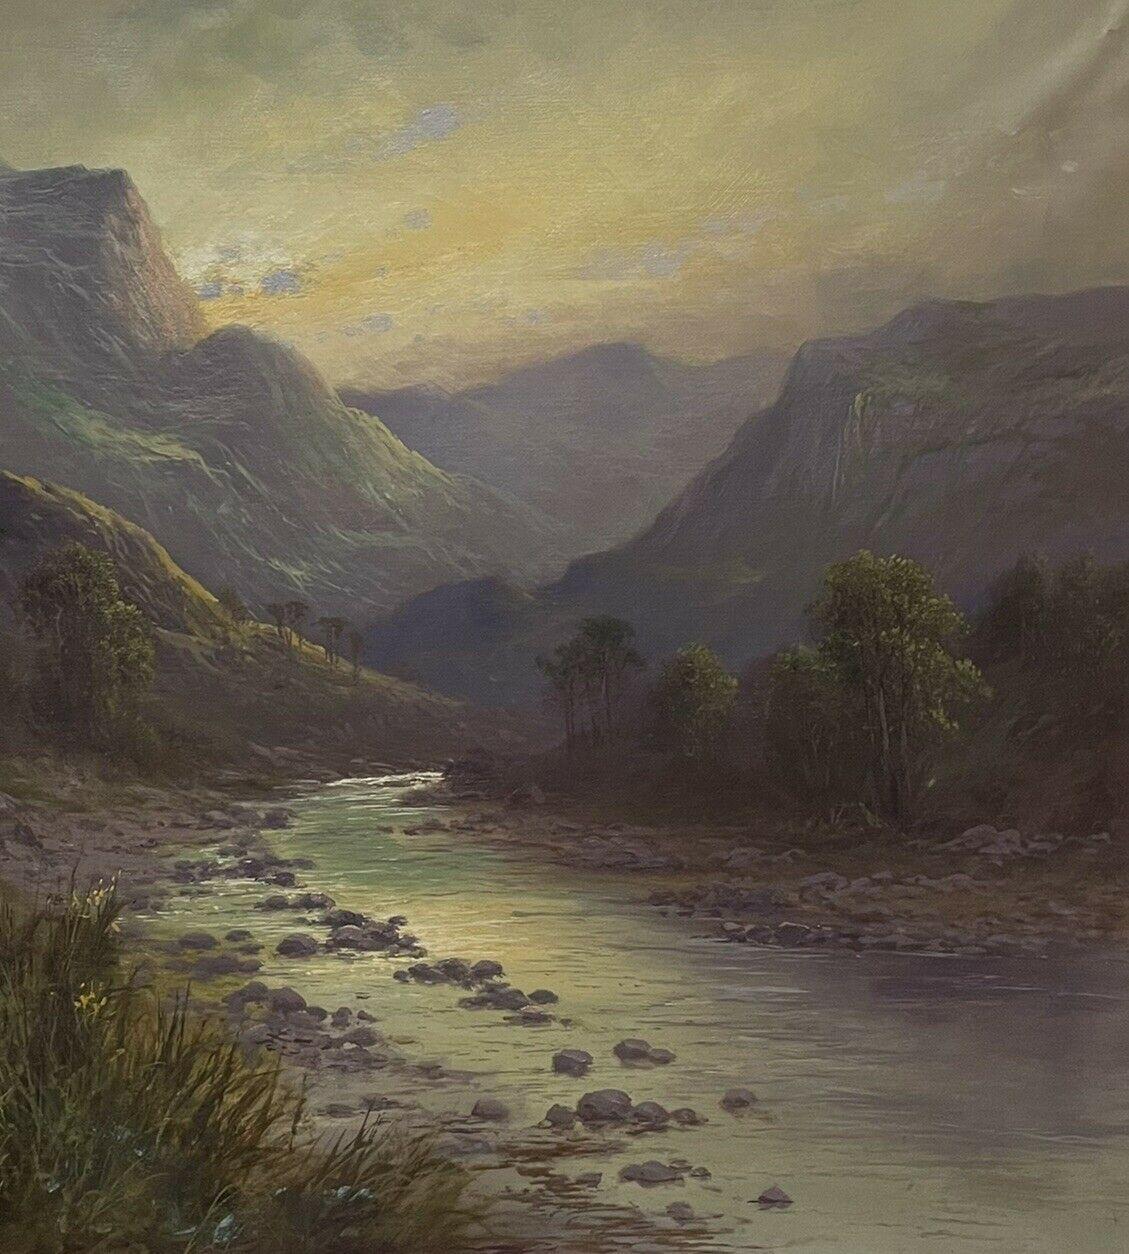 Artiste/École : Sidney Yates Johnson, britannique, vers 1900. 

Titre : La fin du jour, beau paysage des Highlands écossais de la fin de l'époque victorienne au coucher du soleil, avec des moutons le long d'un chemin de la vallée d'une rivière.